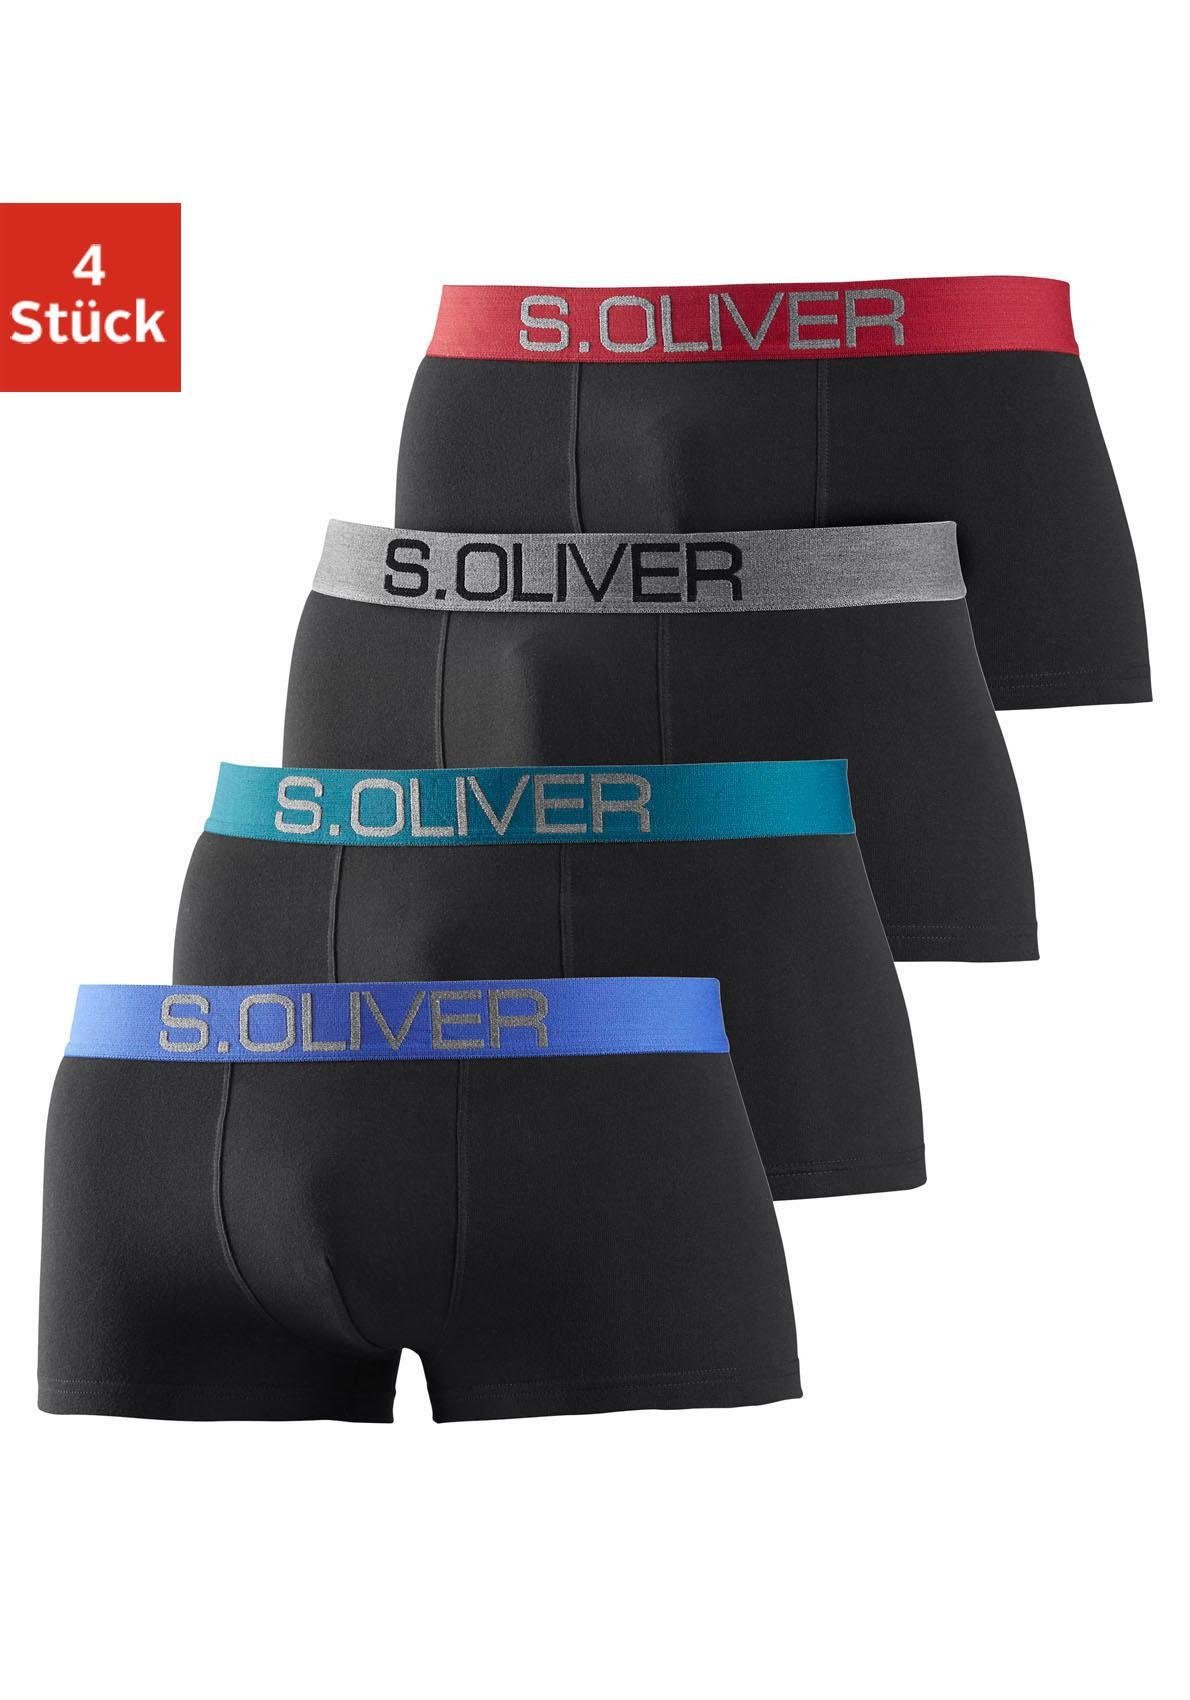 s.Oliver Boxershorts kontrastfarbenem (Packung, schwarz-grau, Webbund schwarz-rot mit schwarz-blau, in Hipster-Form 4-St) schwarz-türkis